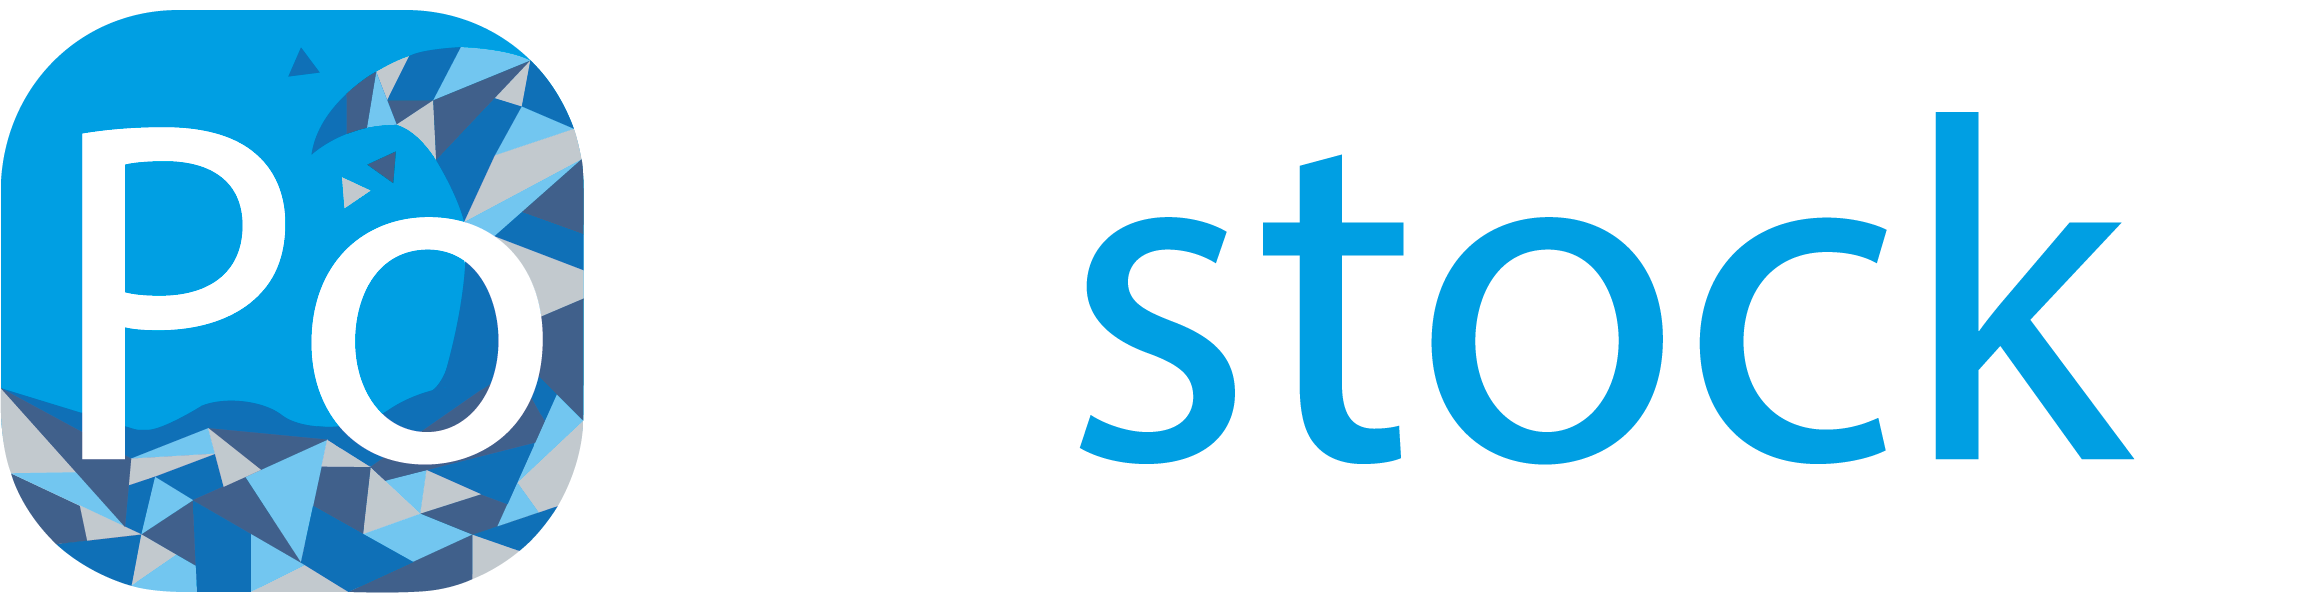 Logo Pollustock slogan blanc